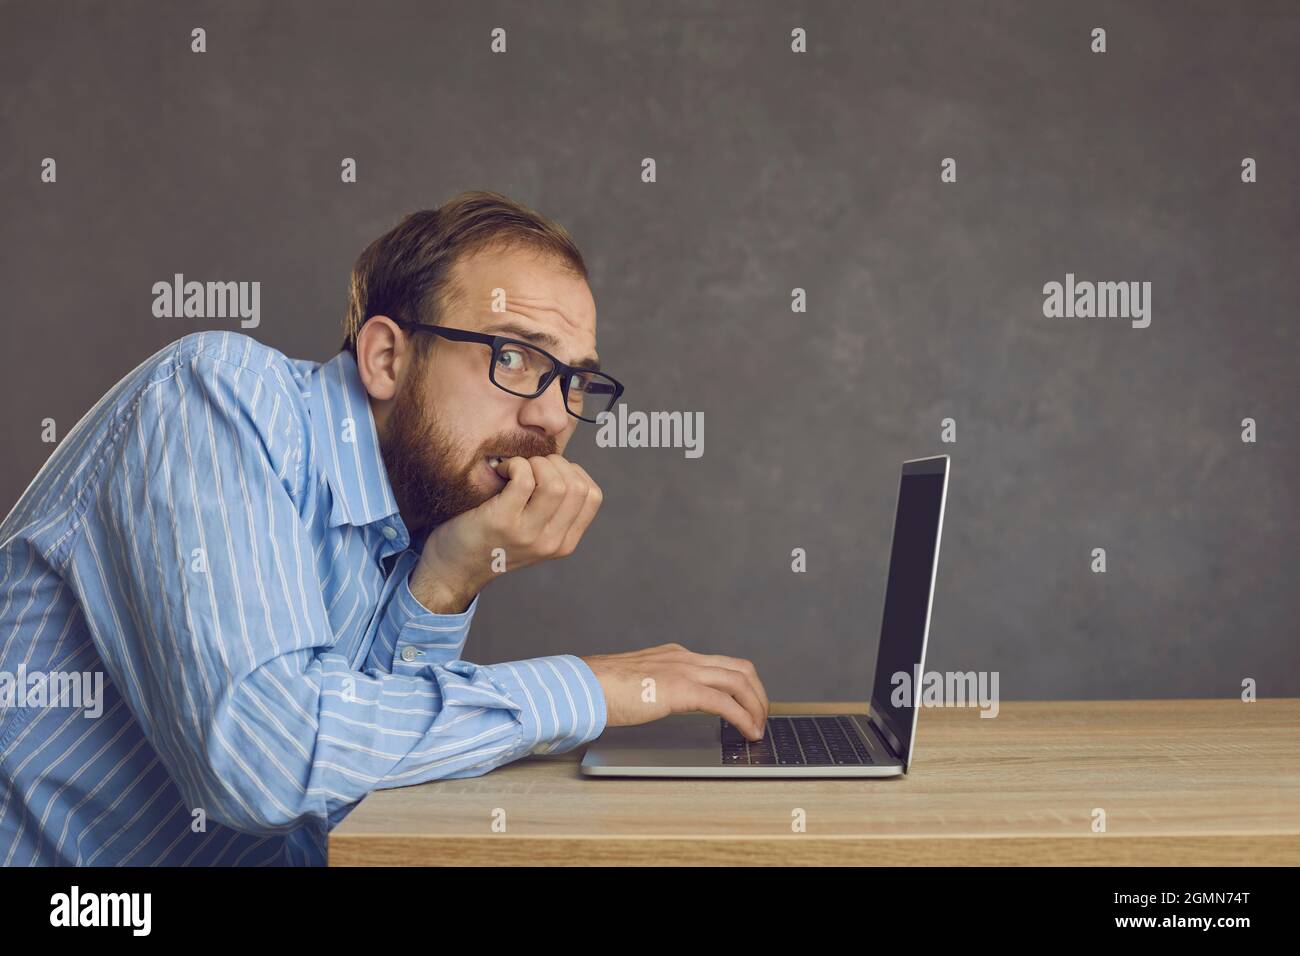 Homme stressé et effrayé qui a fait une erreur en mordant les ongles assis au bureau avec un ordinateur portable Banque D'Images